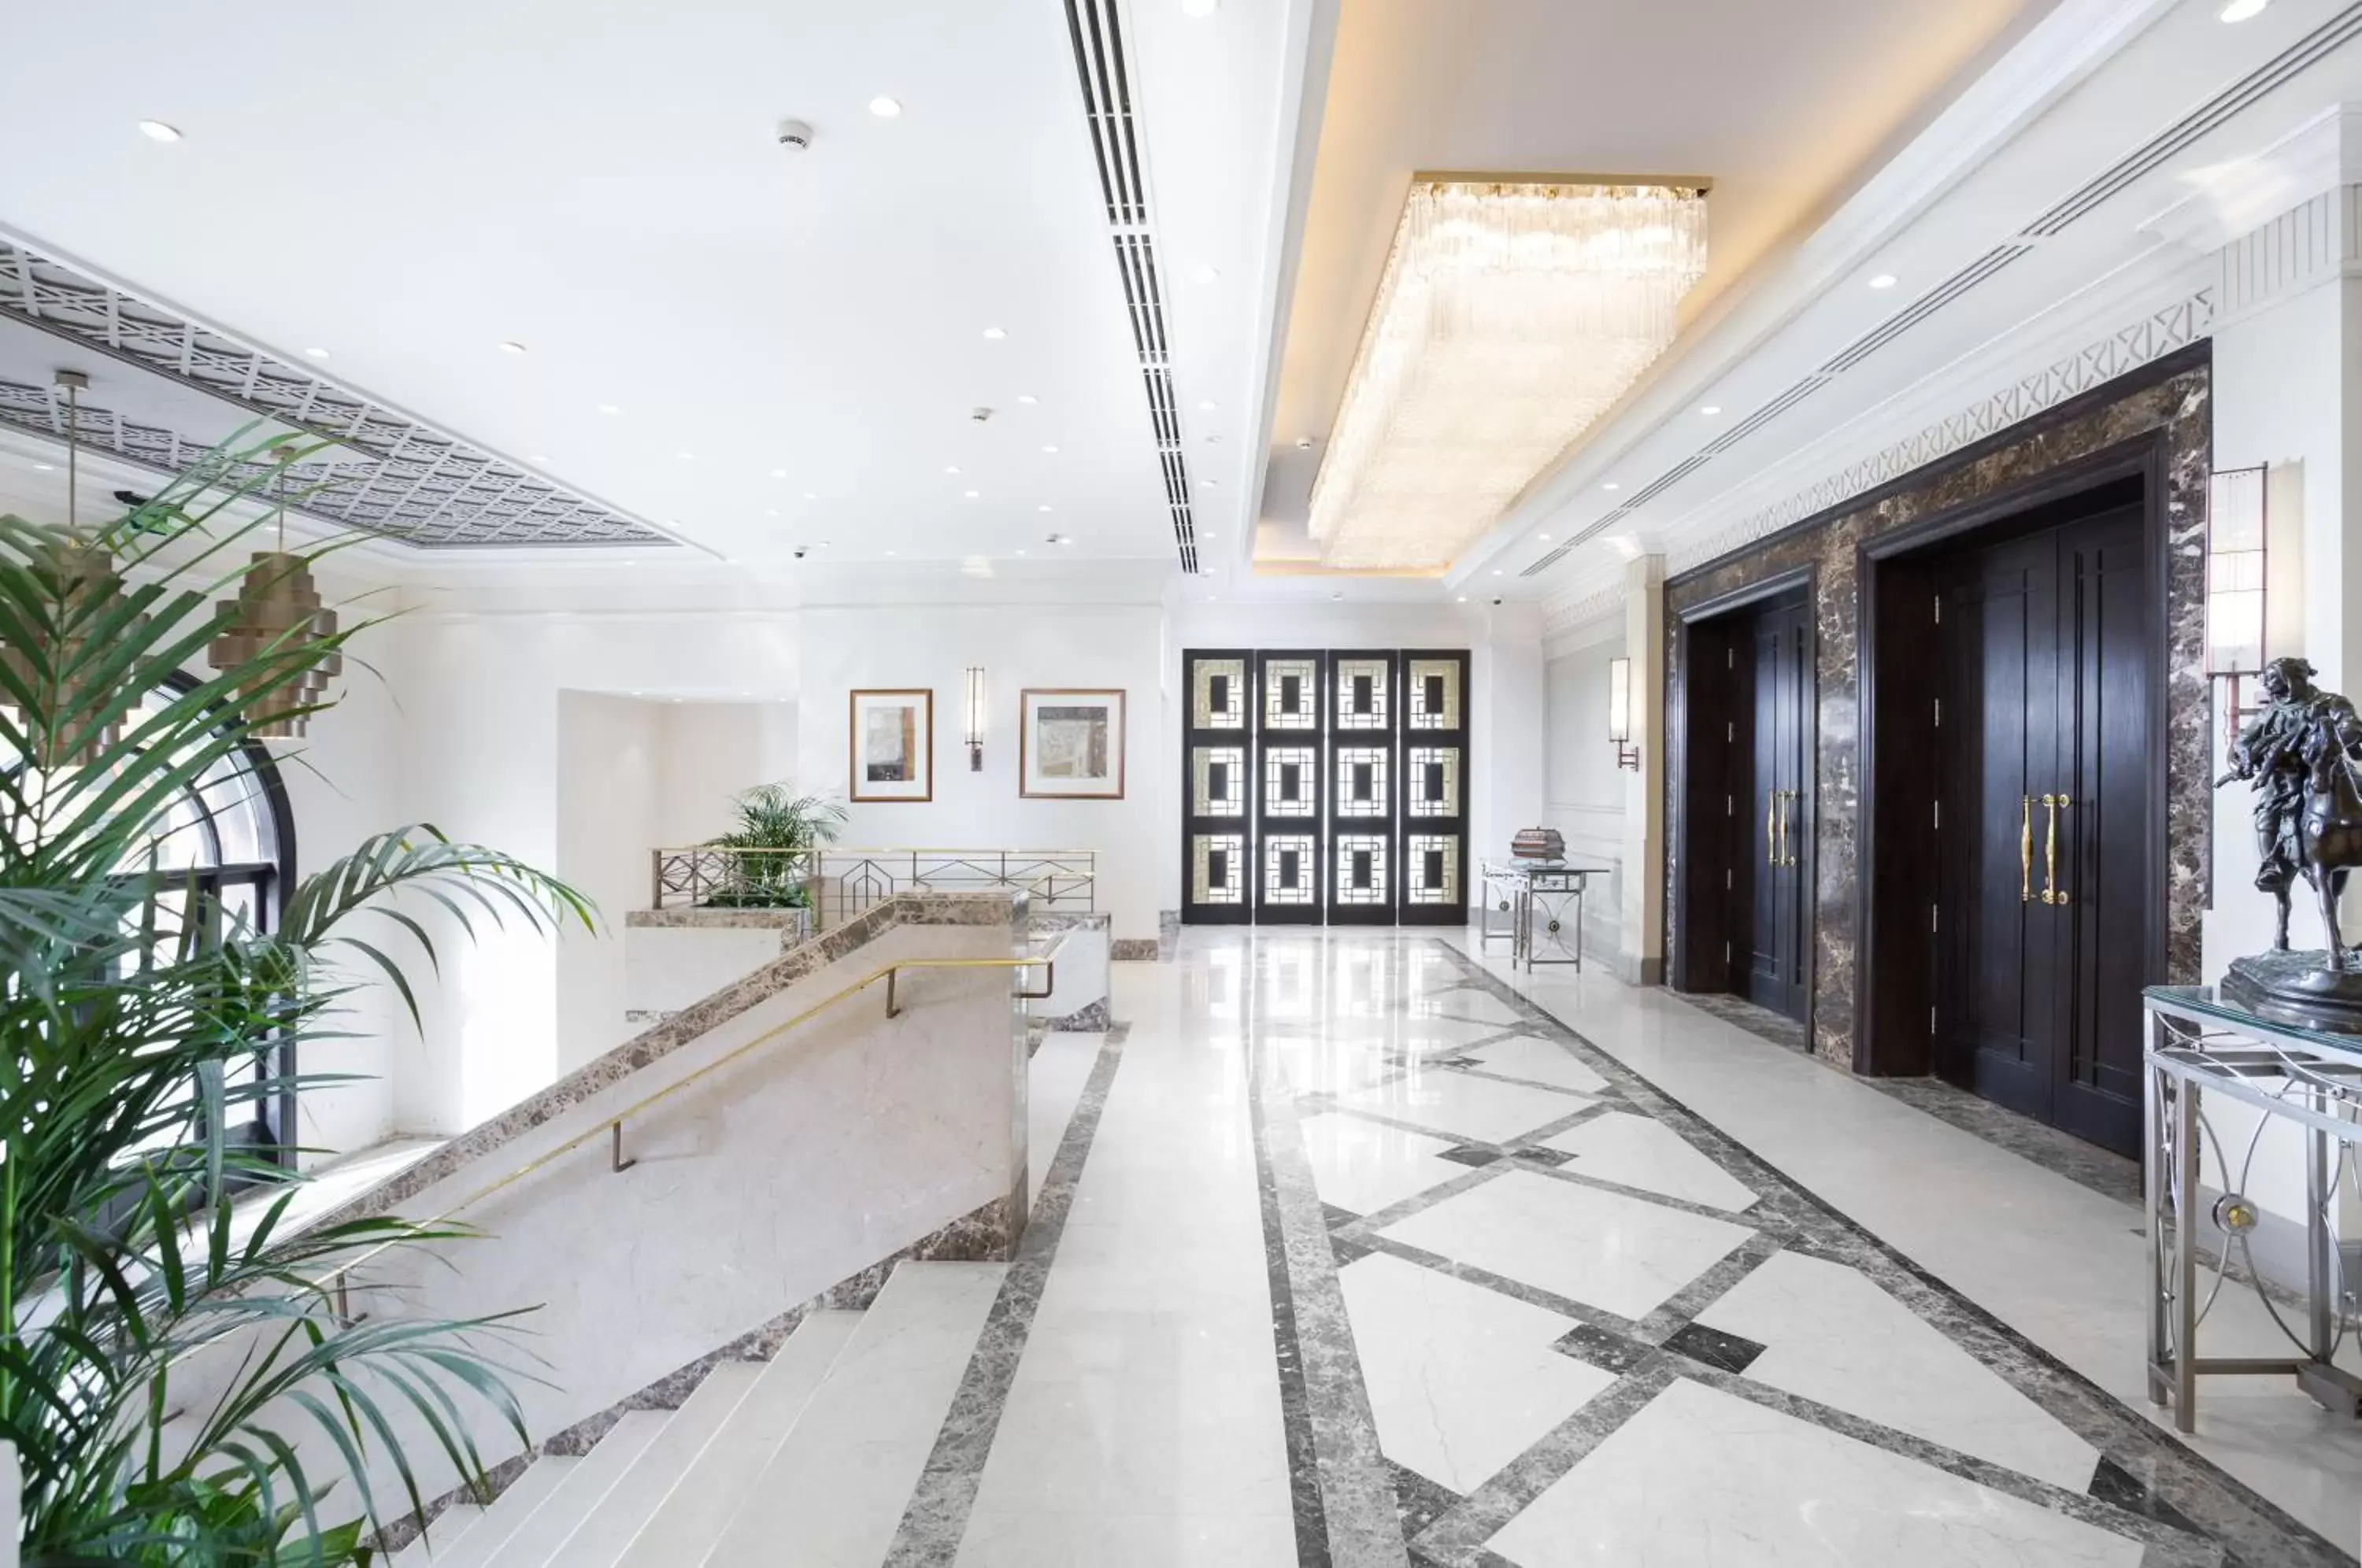 Banquet/Function facilities, Lobby/Reception in Concorde El Salam Cairo Hotel & Casino